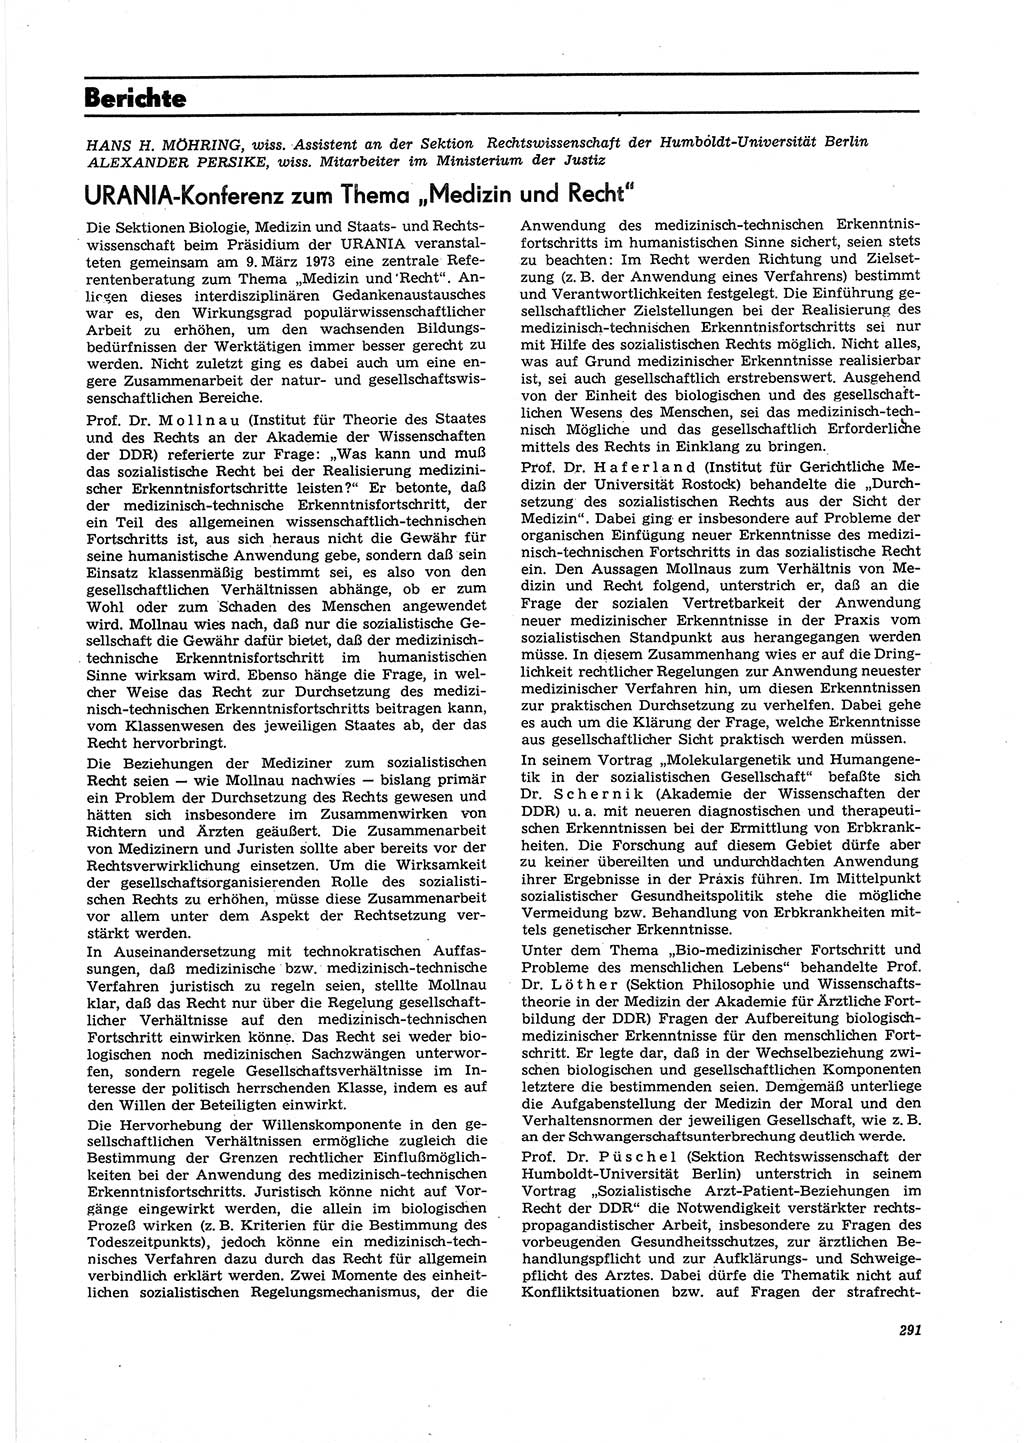 Neue Justiz (NJ), Zeitschrift für Recht und Rechtswissenschaft [Deutsche Demokratische Republik (DDR)], 27. Jahrgang 1973, Seite 291 (NJ DDR 1973, S. 291)